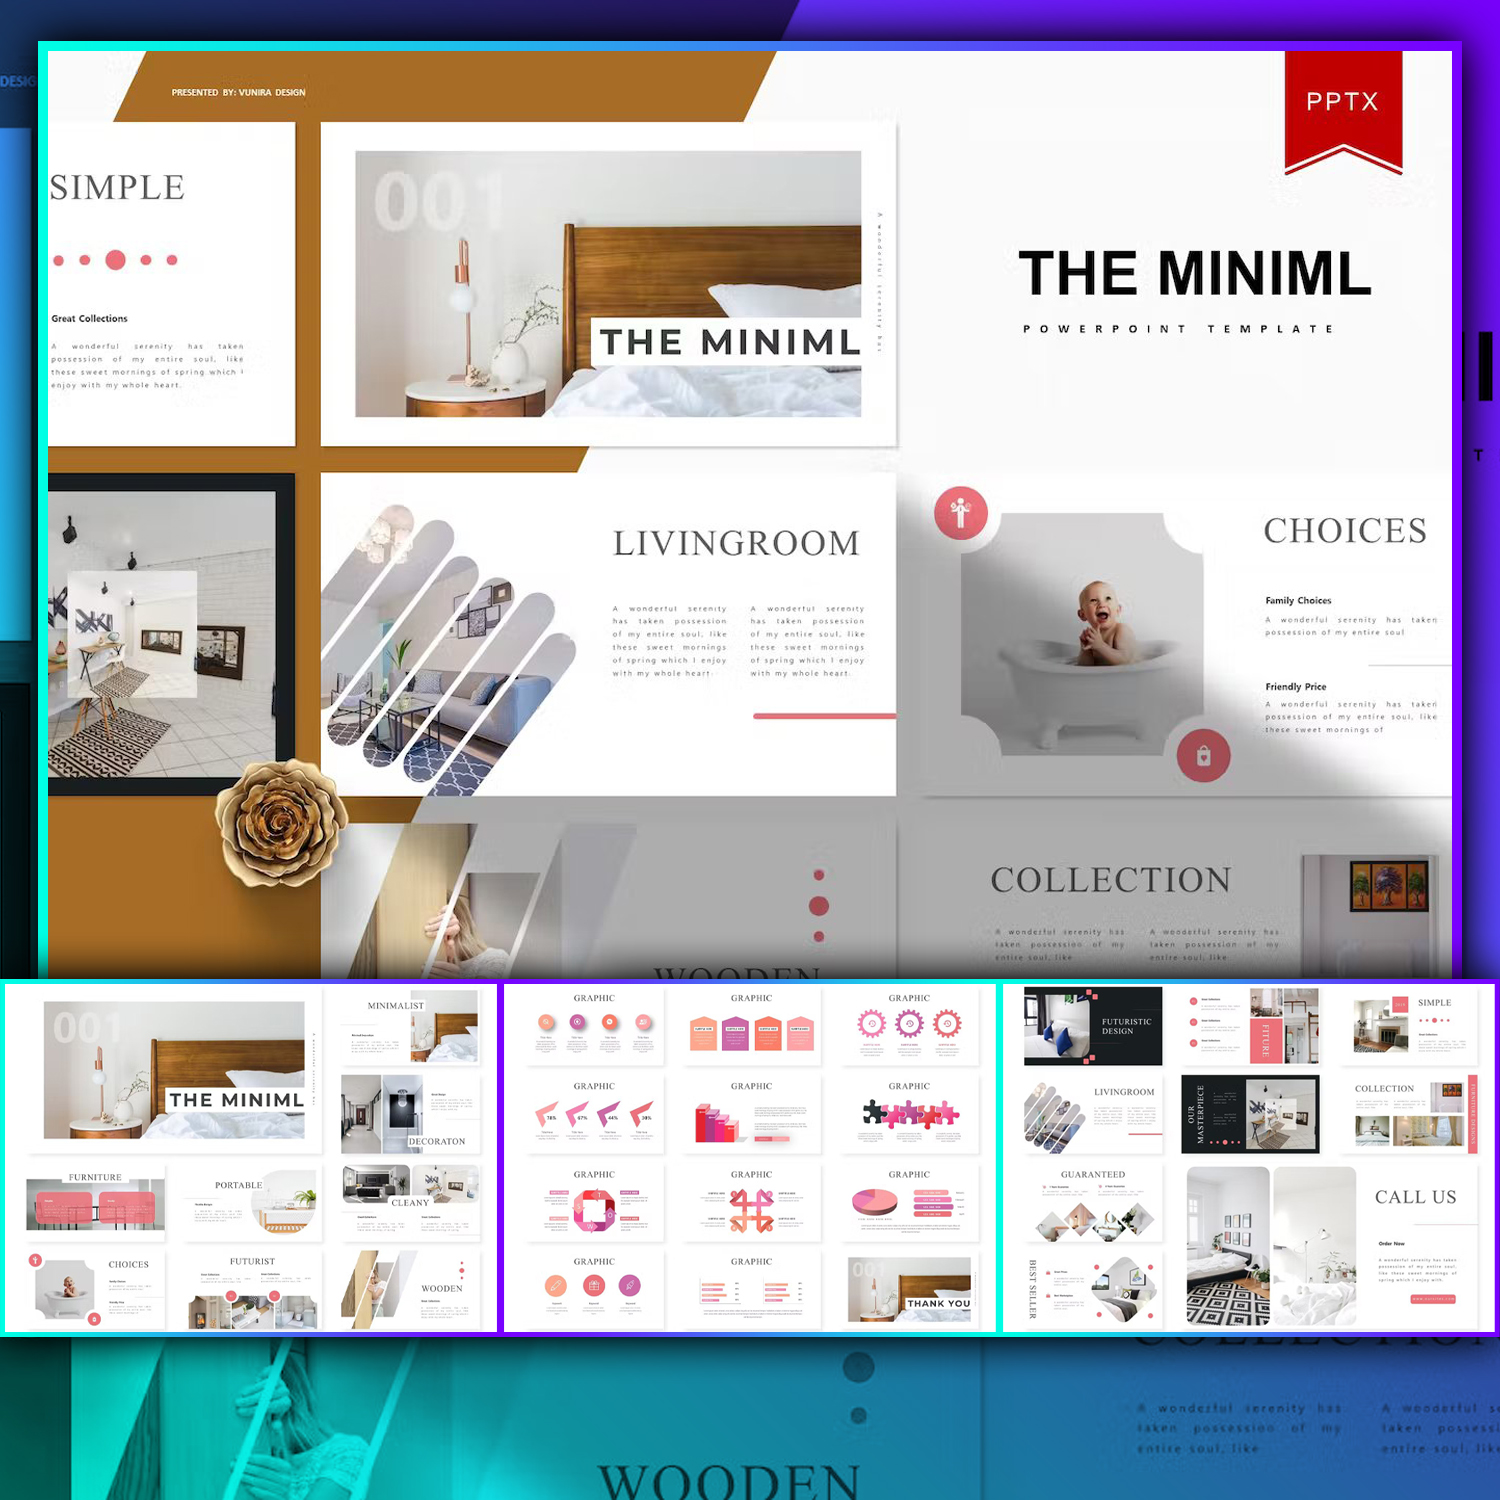 The Miniml | Powerpoint Template.